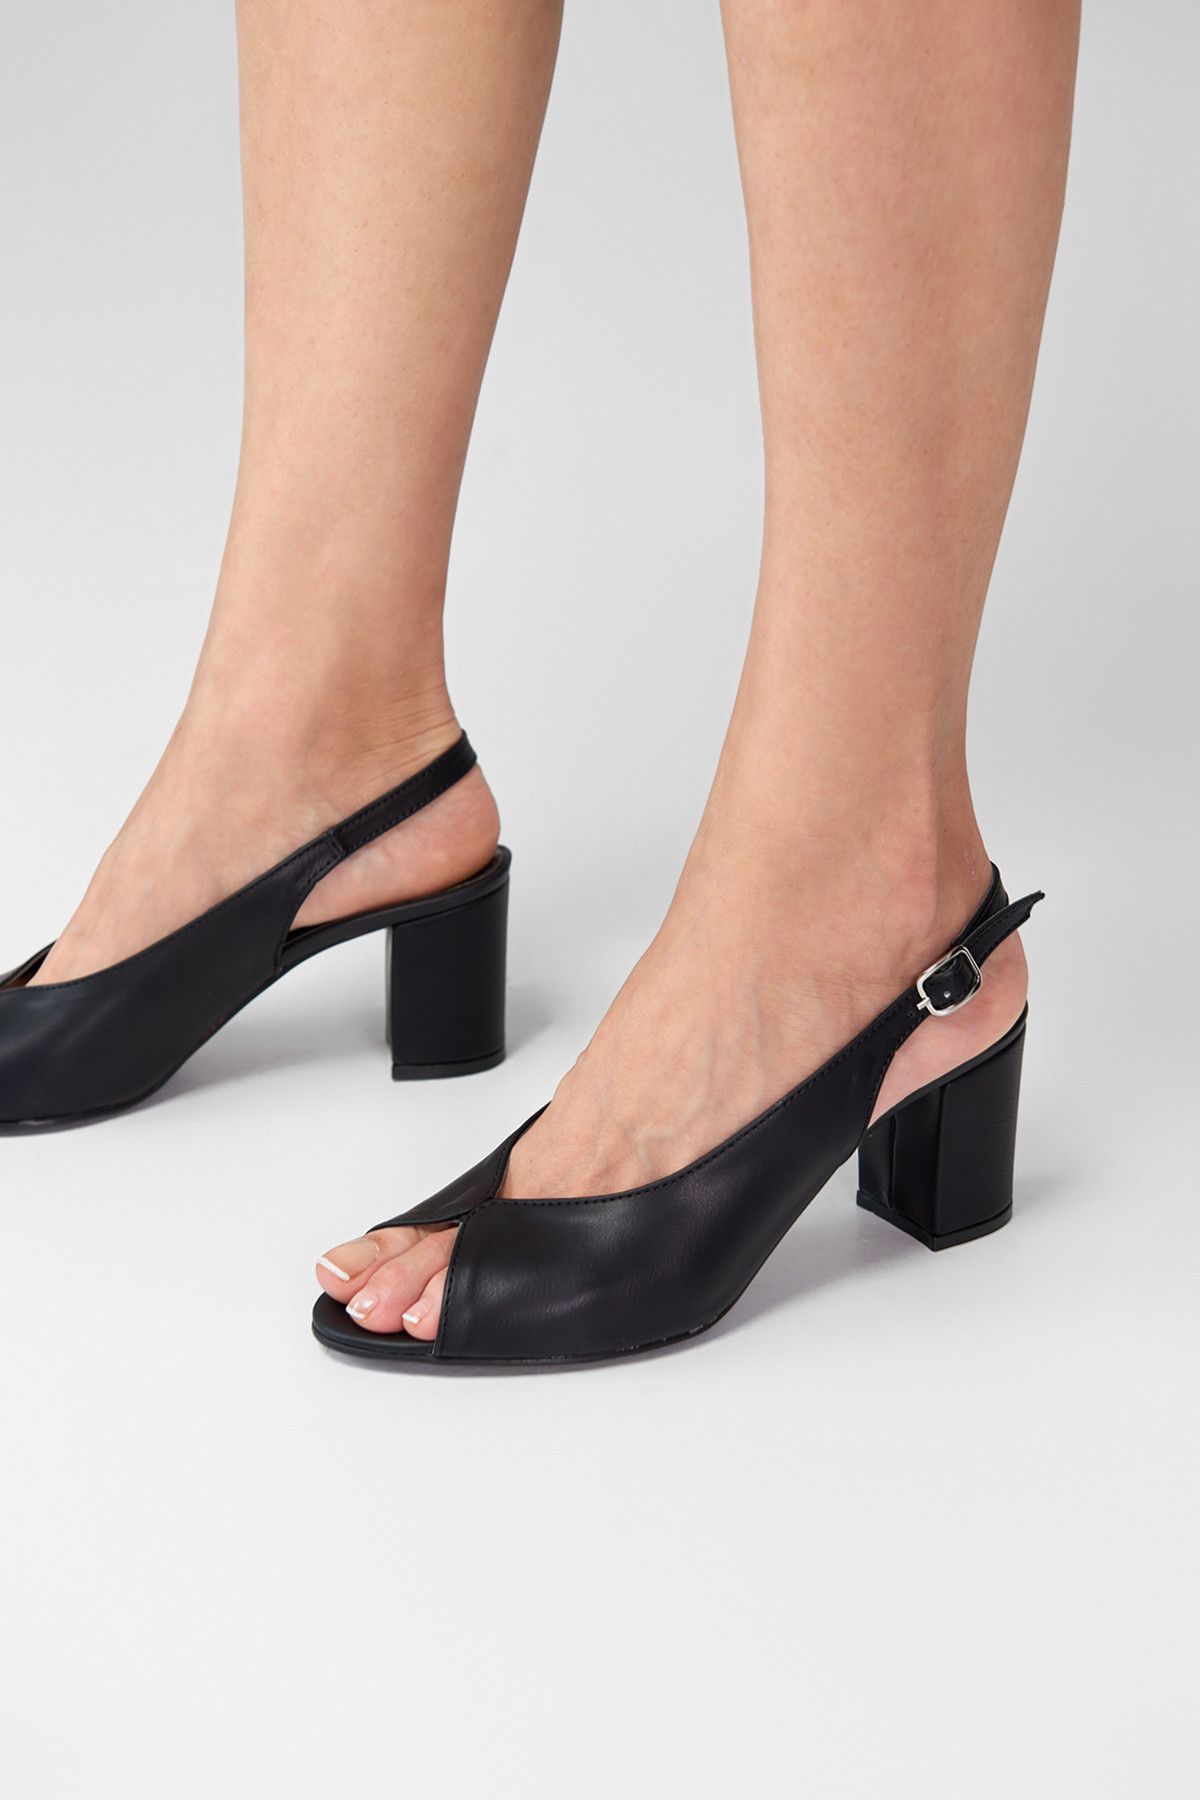 TRENDYOLMİLLA Siyah Kadın Topuklu Ayakkabı 9109